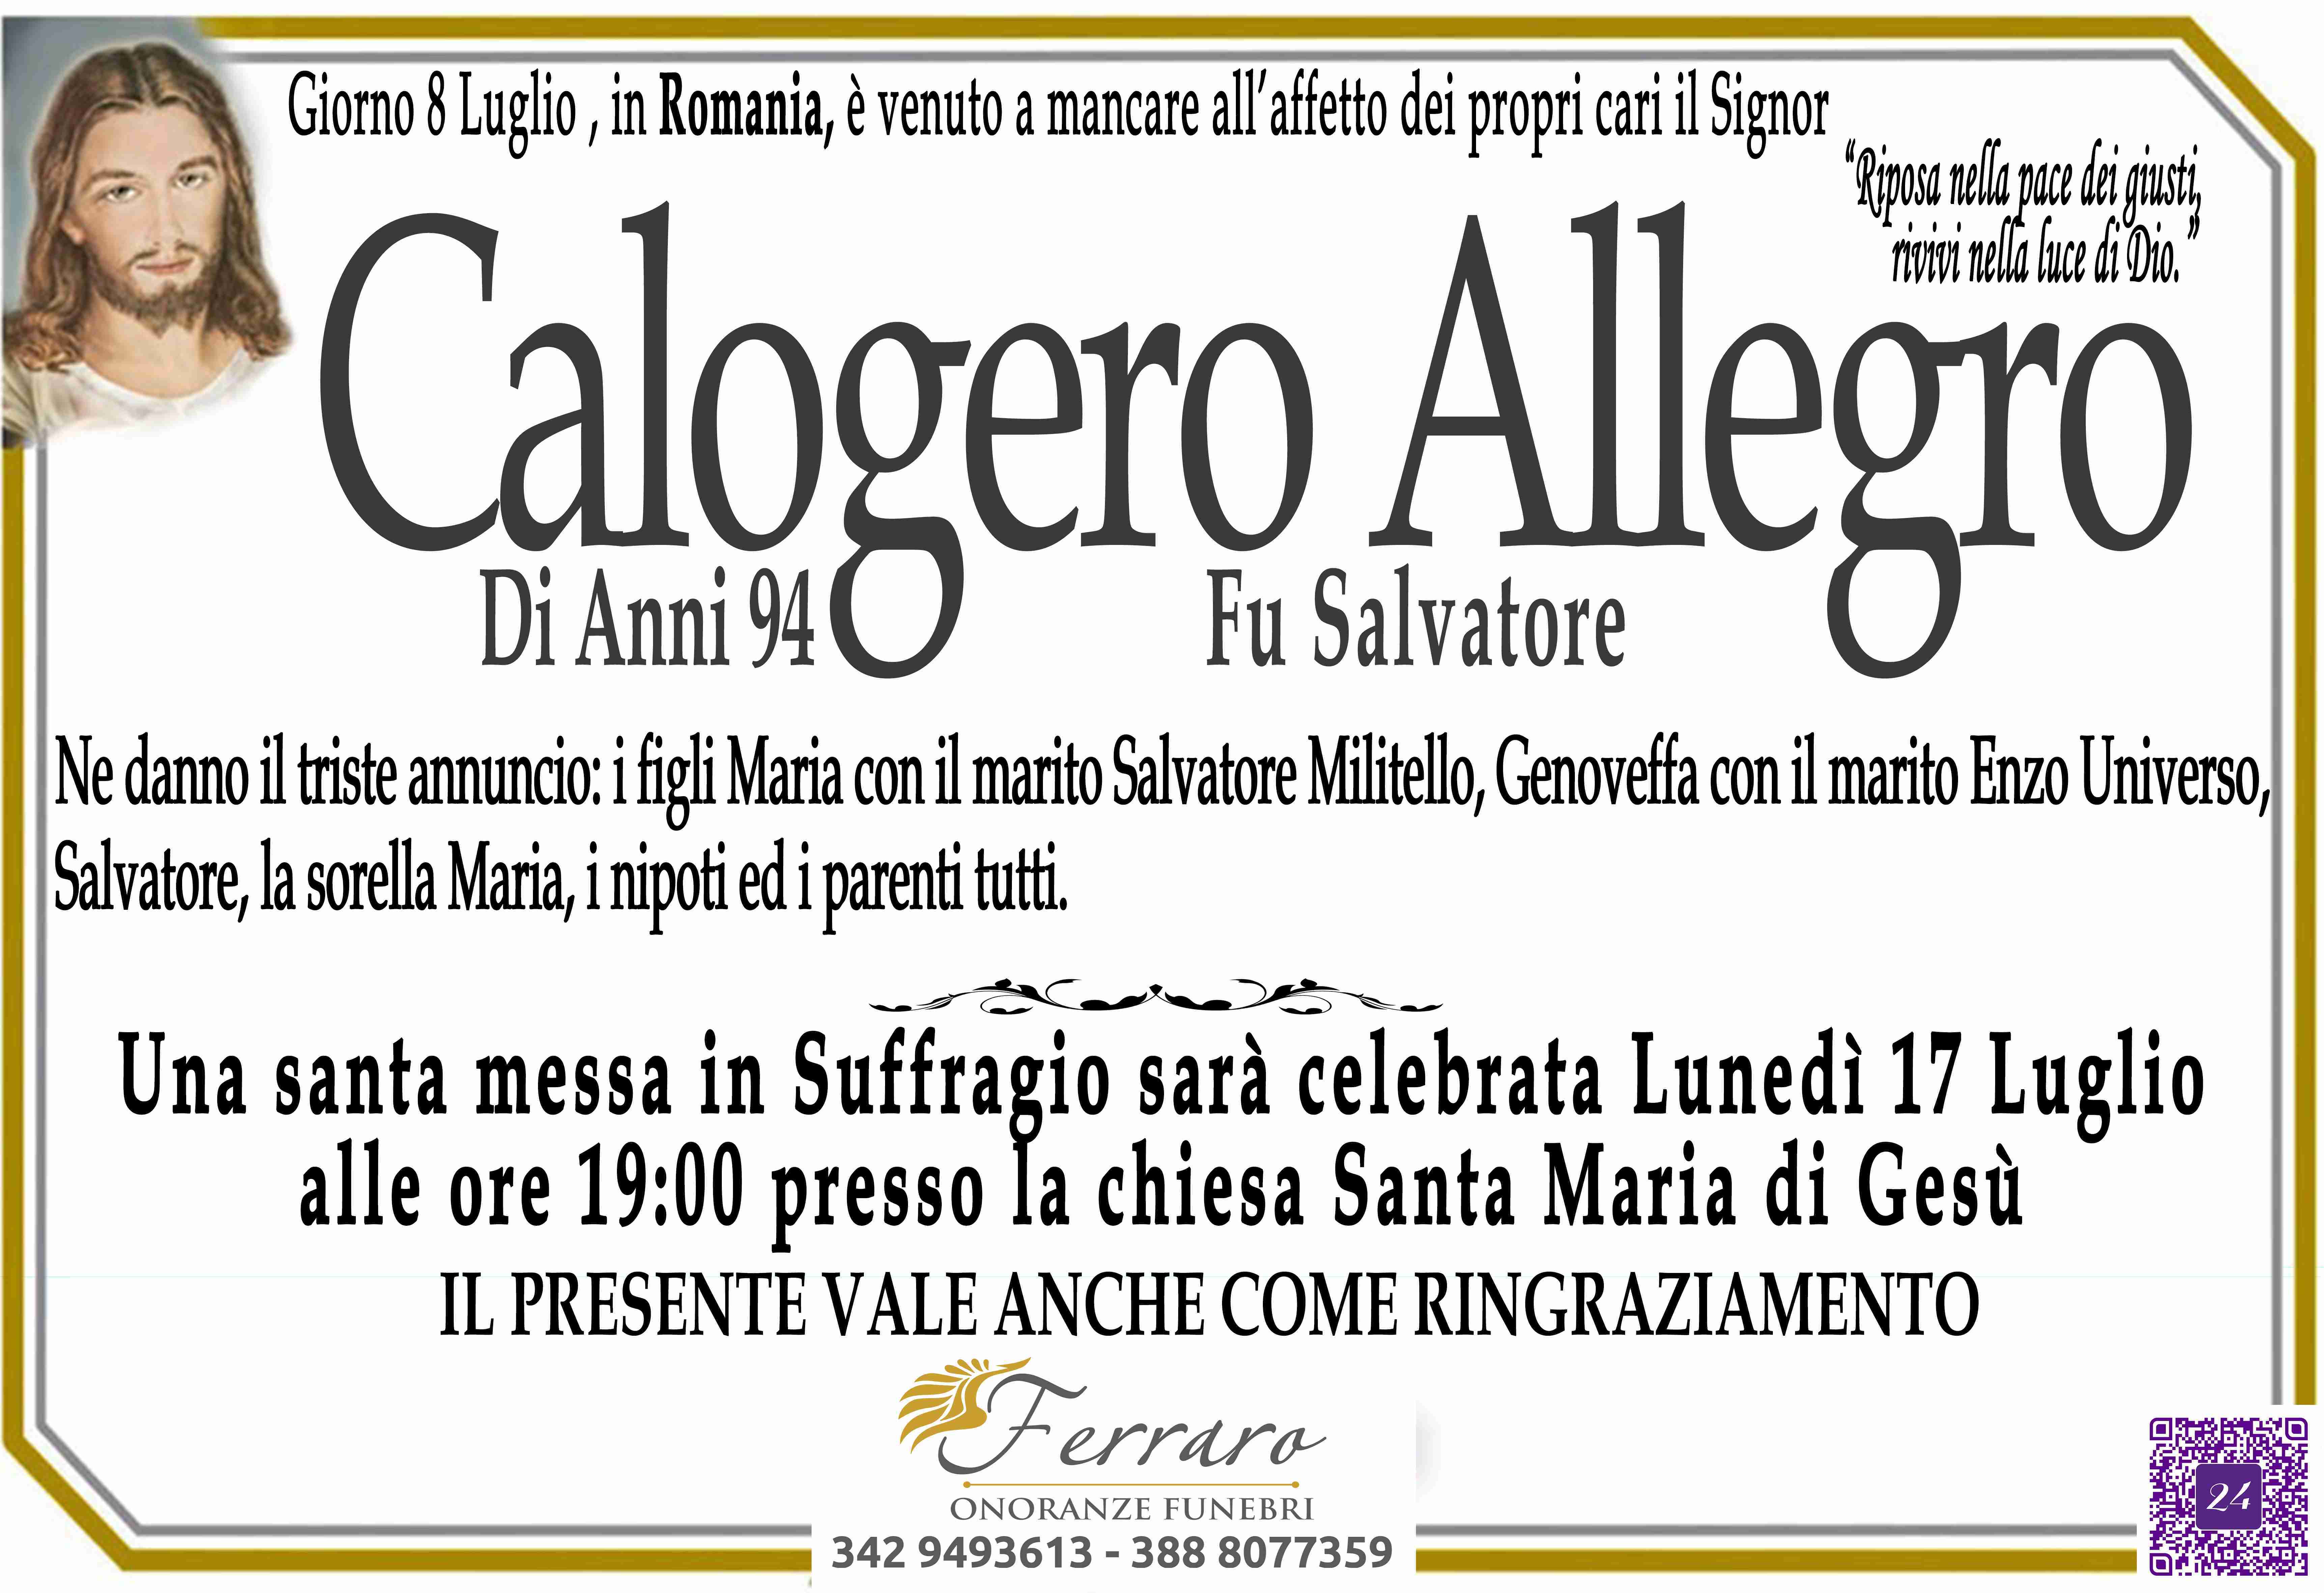 Calogero Allegro